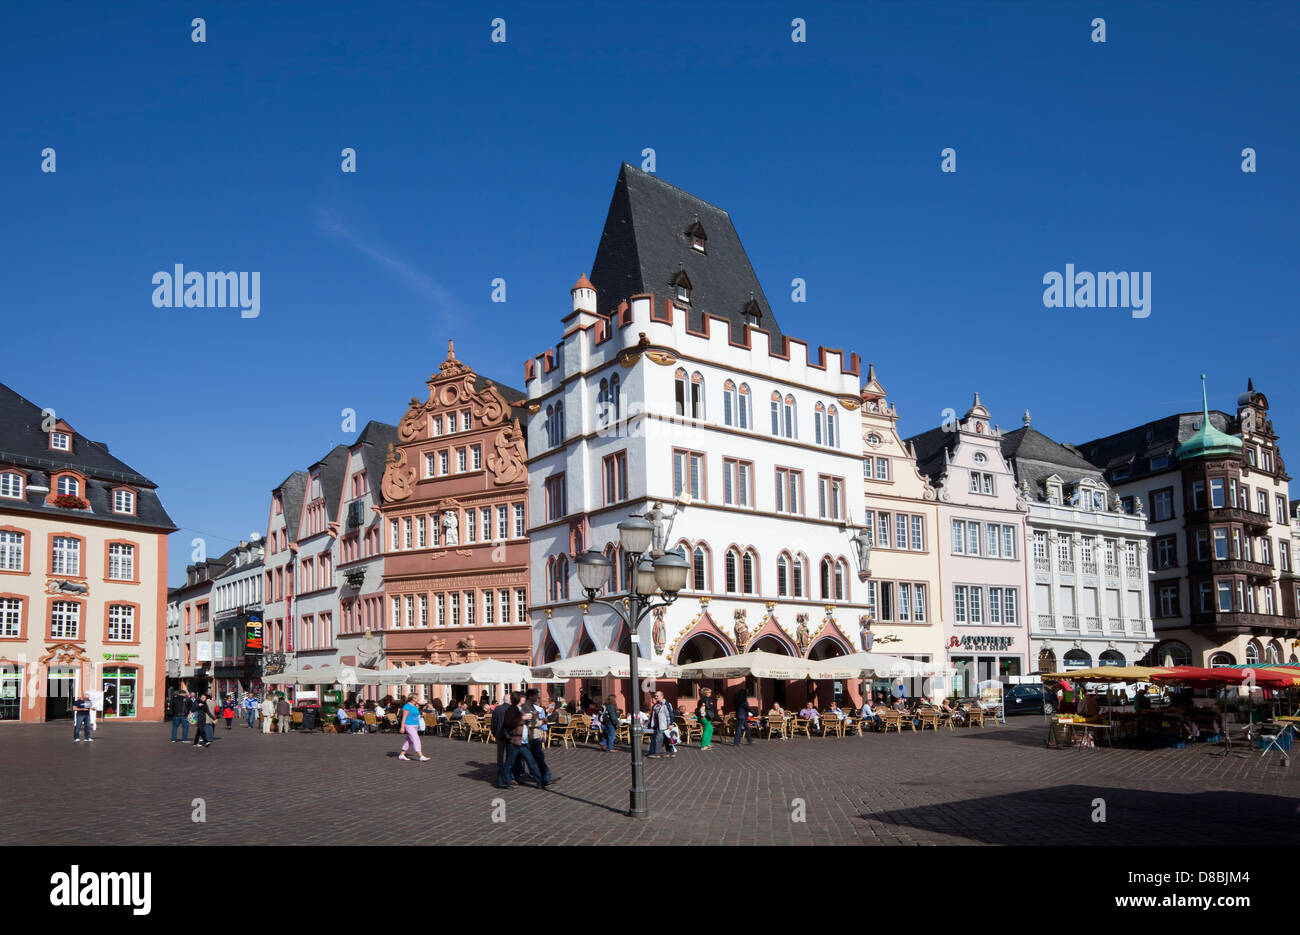 Der mittelalterliche Marktplatz am Hauptmarkt Quadrat, Steipe, Trier, Rheinland-Pfalz, Deutschland, Europa Stockfoto